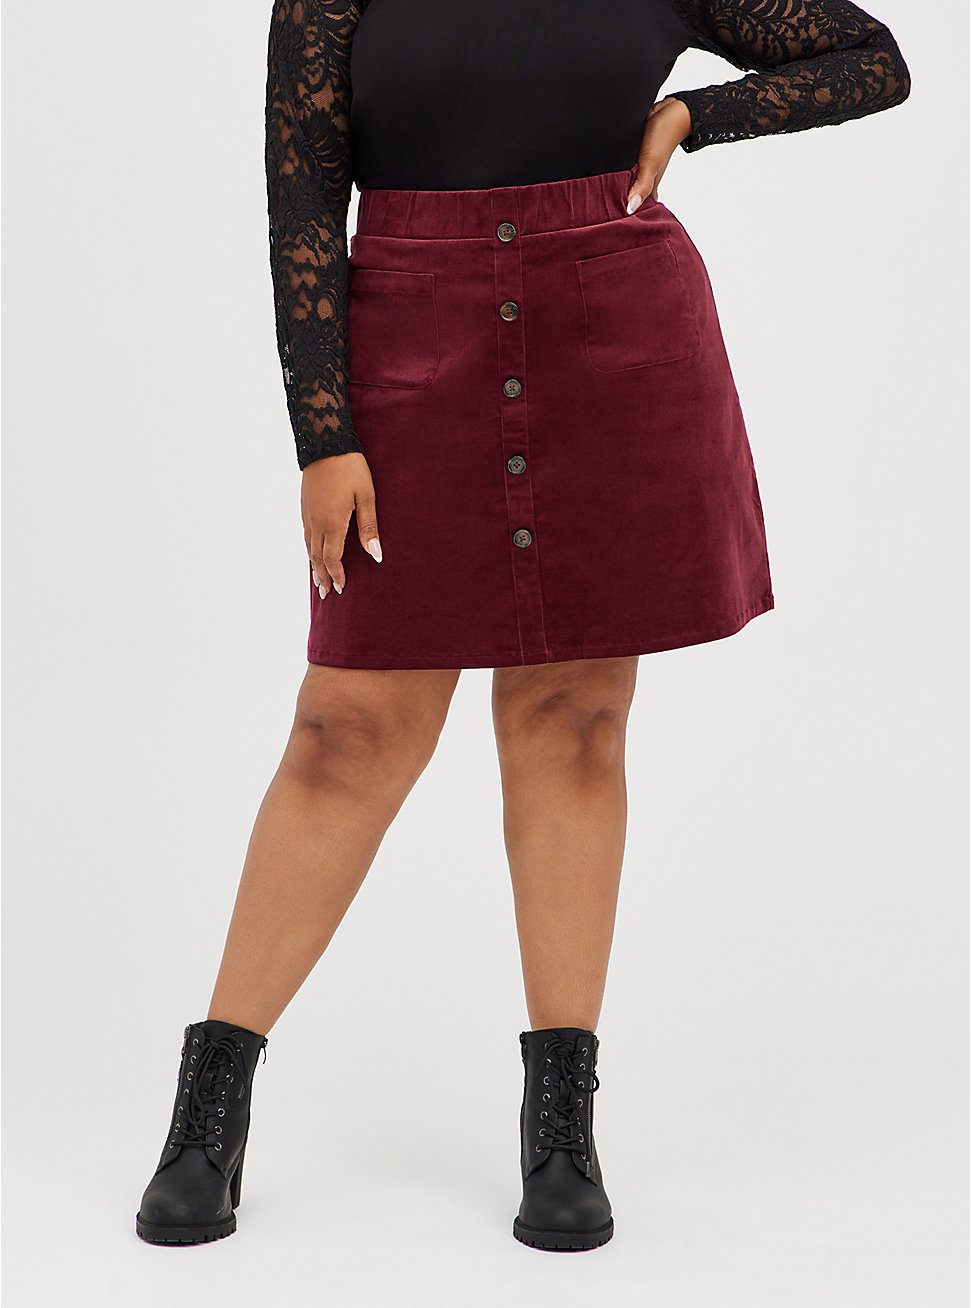 Plus Size Button Front Mini Skirt - Corduroy Burgundy, ZINFANDEL, hi-res